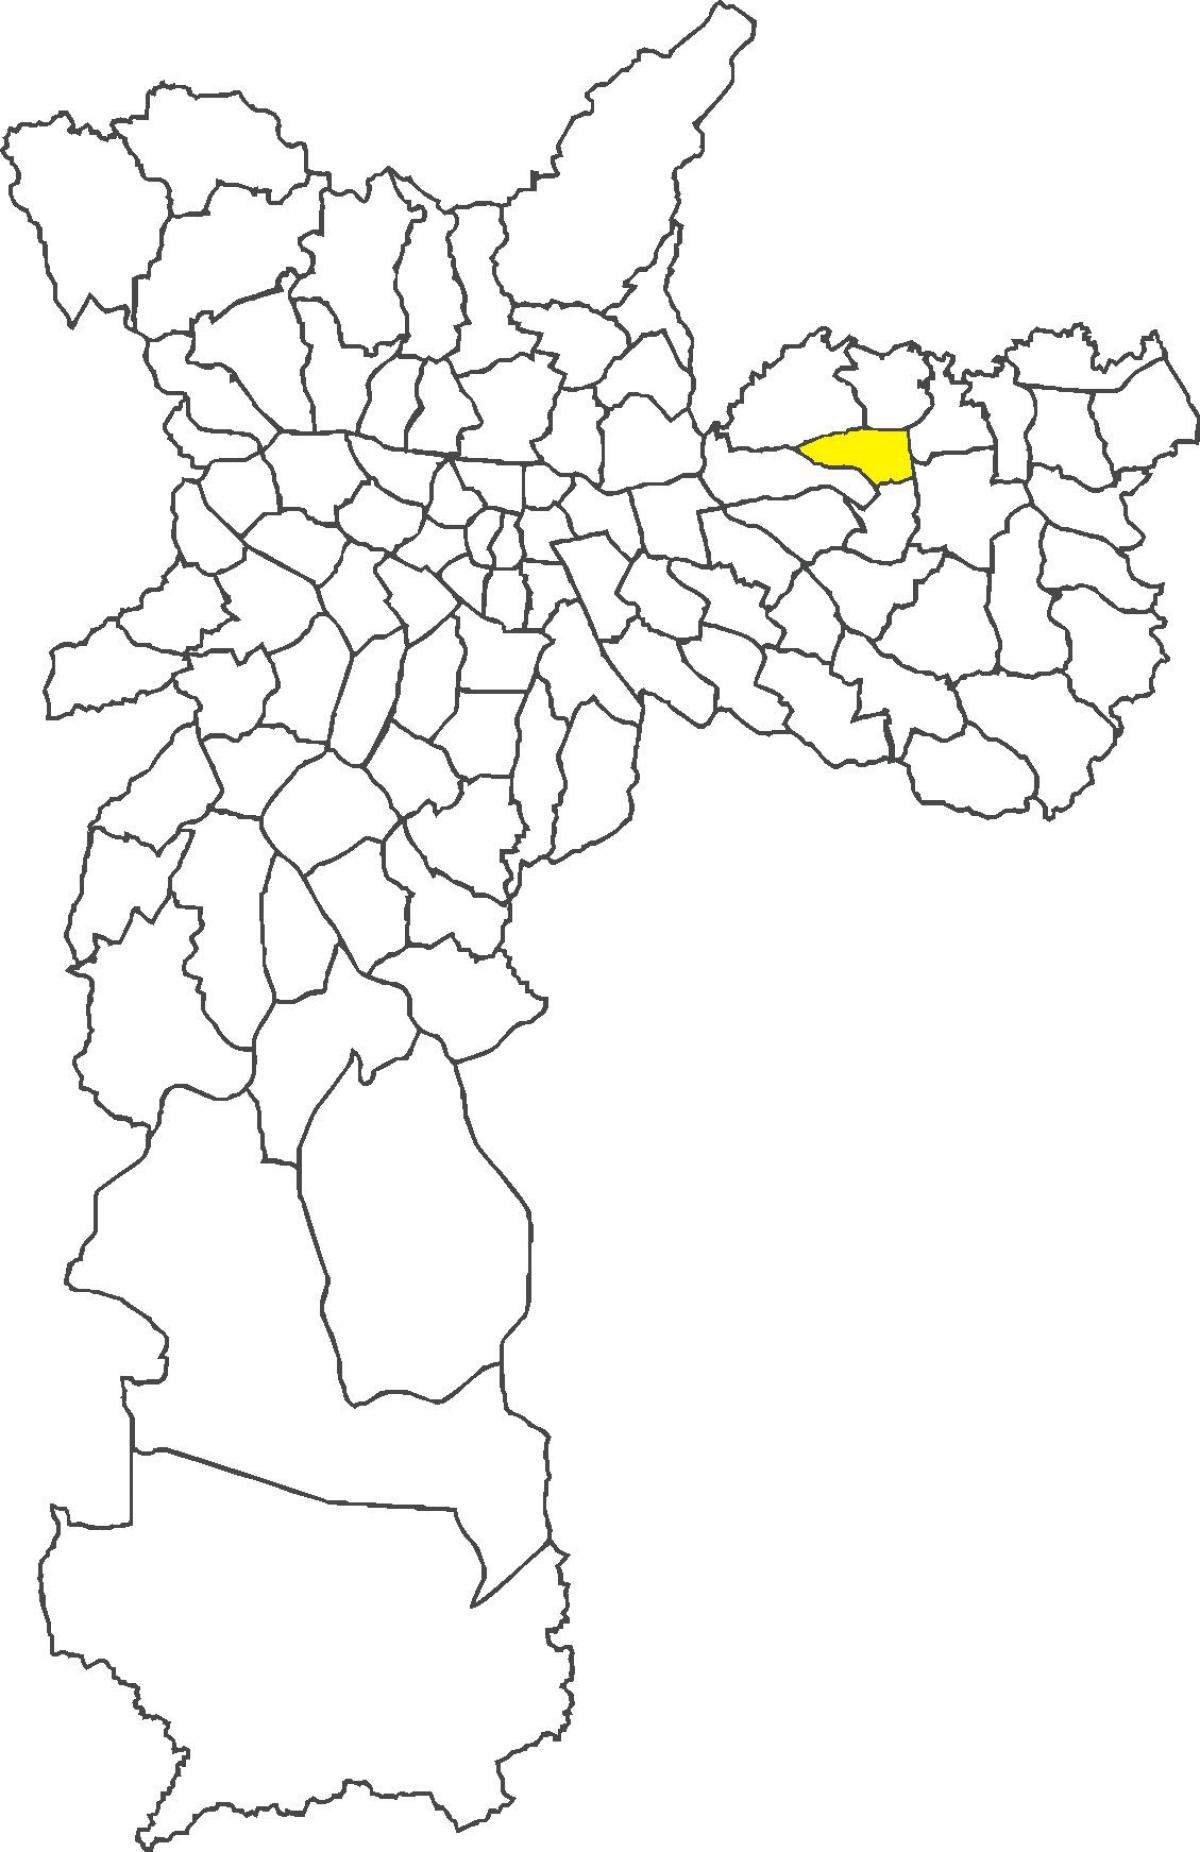 মানচিত্র এর Ponte ফলক জেলা